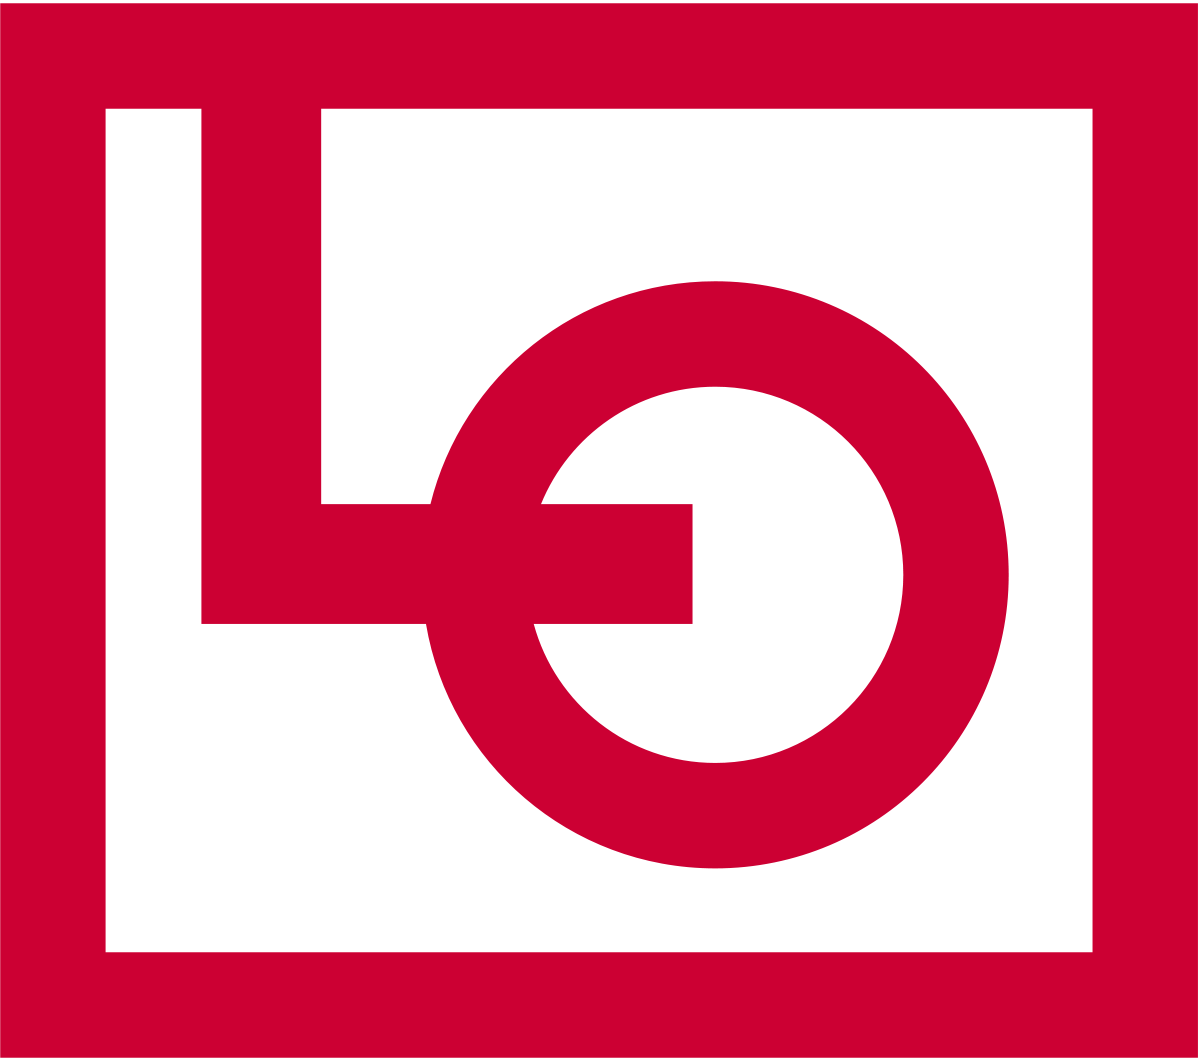 The Danish Confederation of Trade Unions - LO